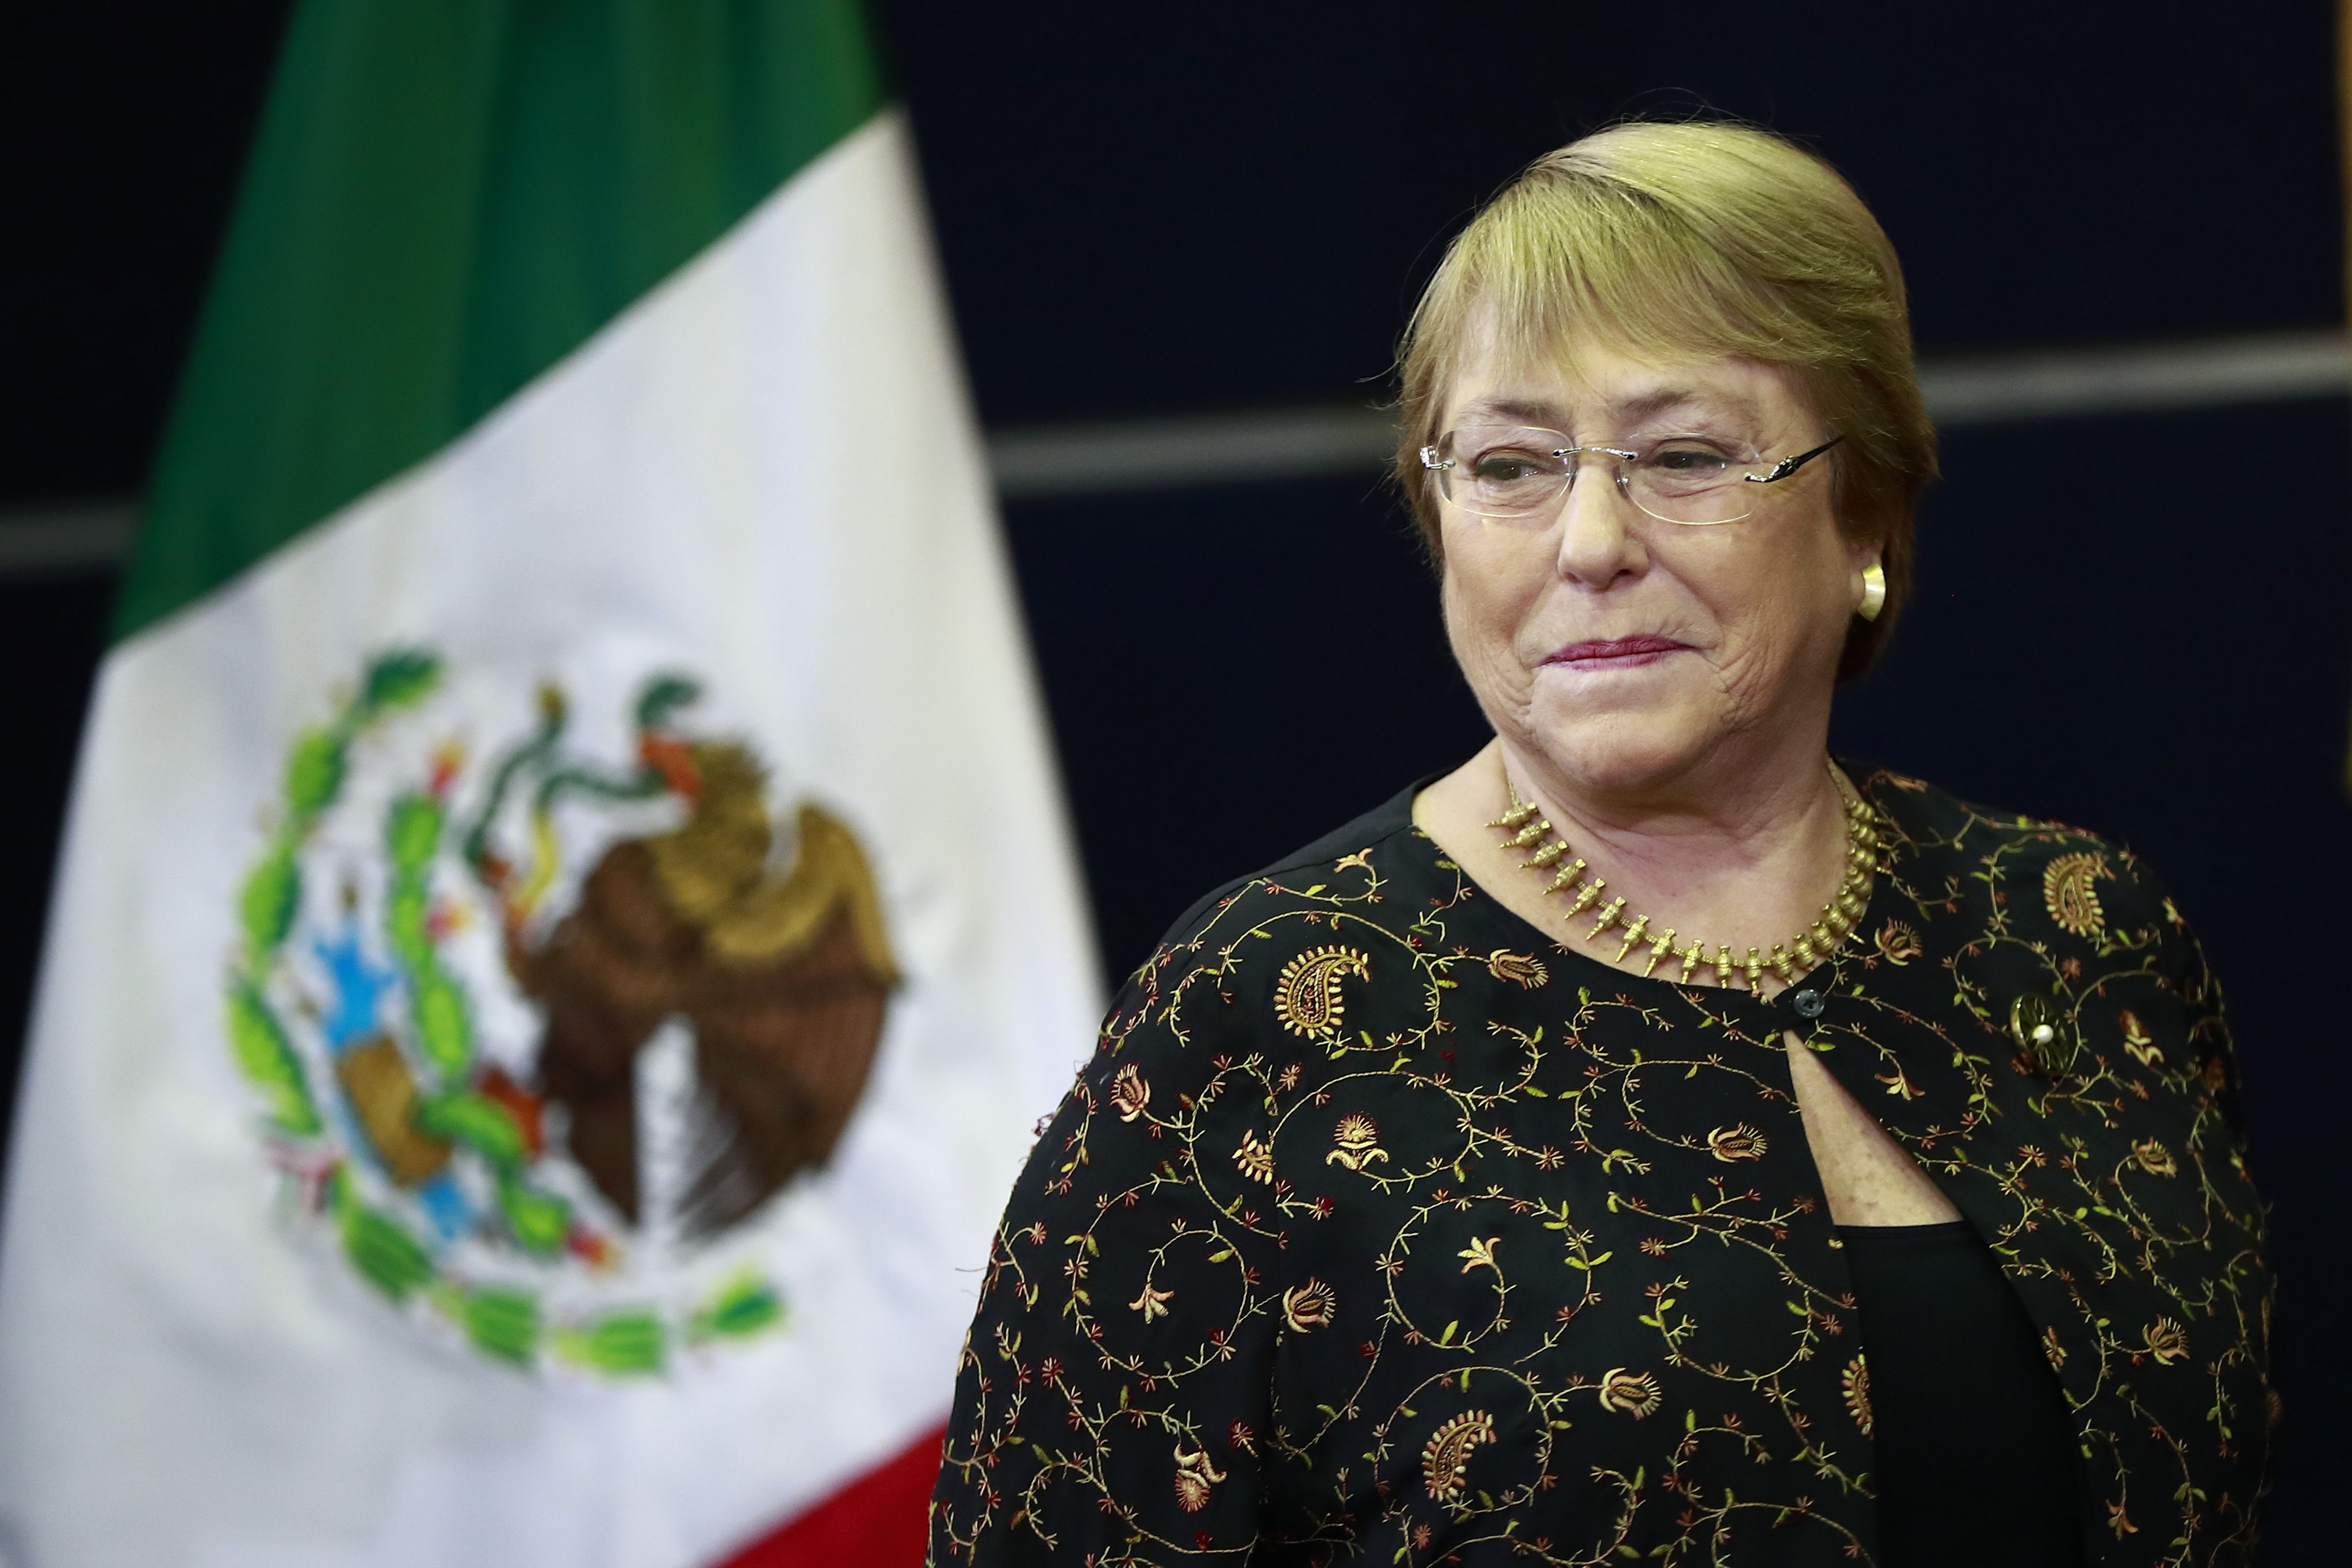 EEUU pide a Bachelet que alce la voz ante abusos en Venezuela, Cuba o Irán